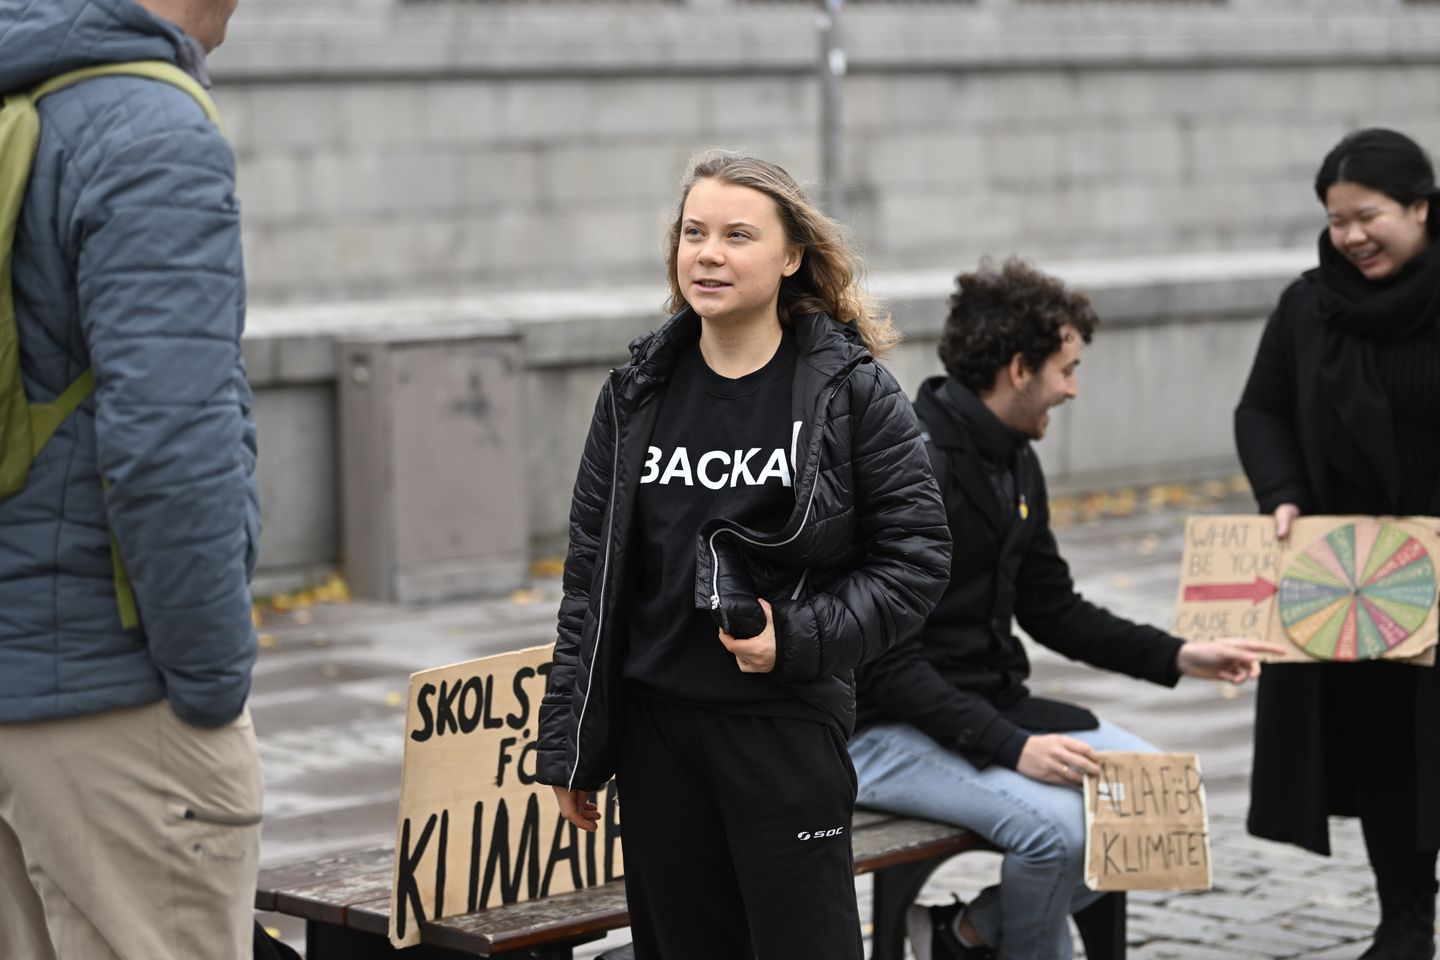 İklim aktivisti Greta Thunberg mezun olduktan sonra okulda greve gitmeyecek ama yine de protesto sözü verdi